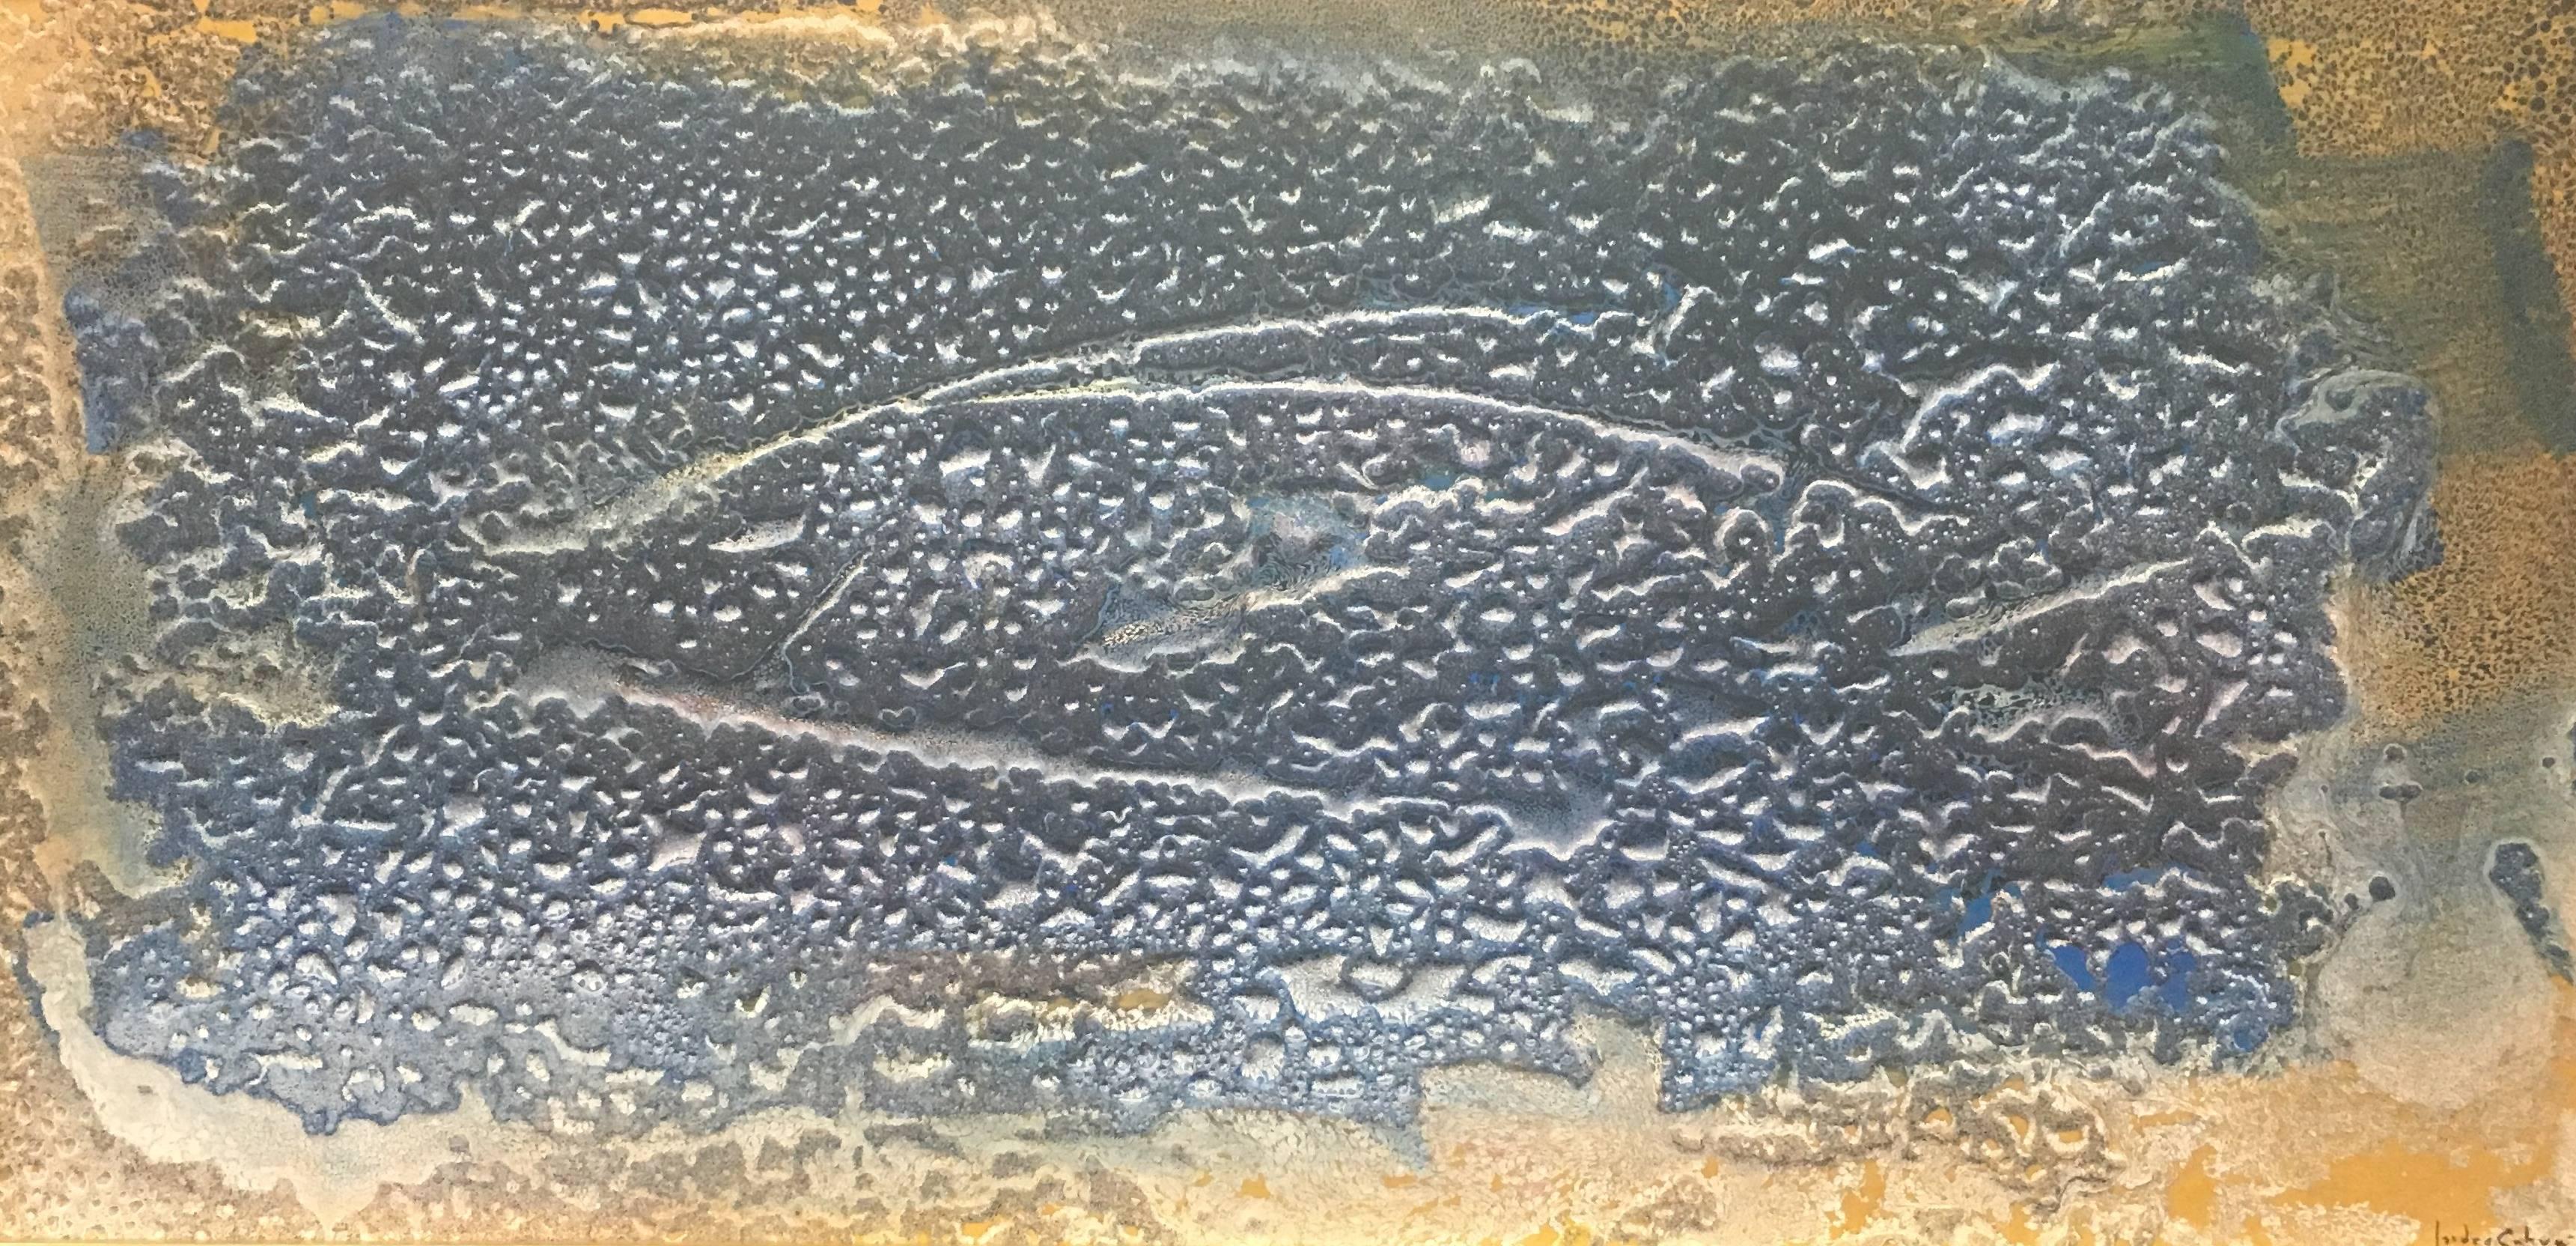 Fische im Meer   Abstraktes Original-Acryl  Malerei 
Kunstwerk des spanischen Künstlers ISIDRO CAHUE.
Acryl auf Holz
Perfekter Zustand

Die Persönlichkeit des Künstlers spiegelt sich in den verschiedenen Bereichen der Kunst wider. Sein Interesse für